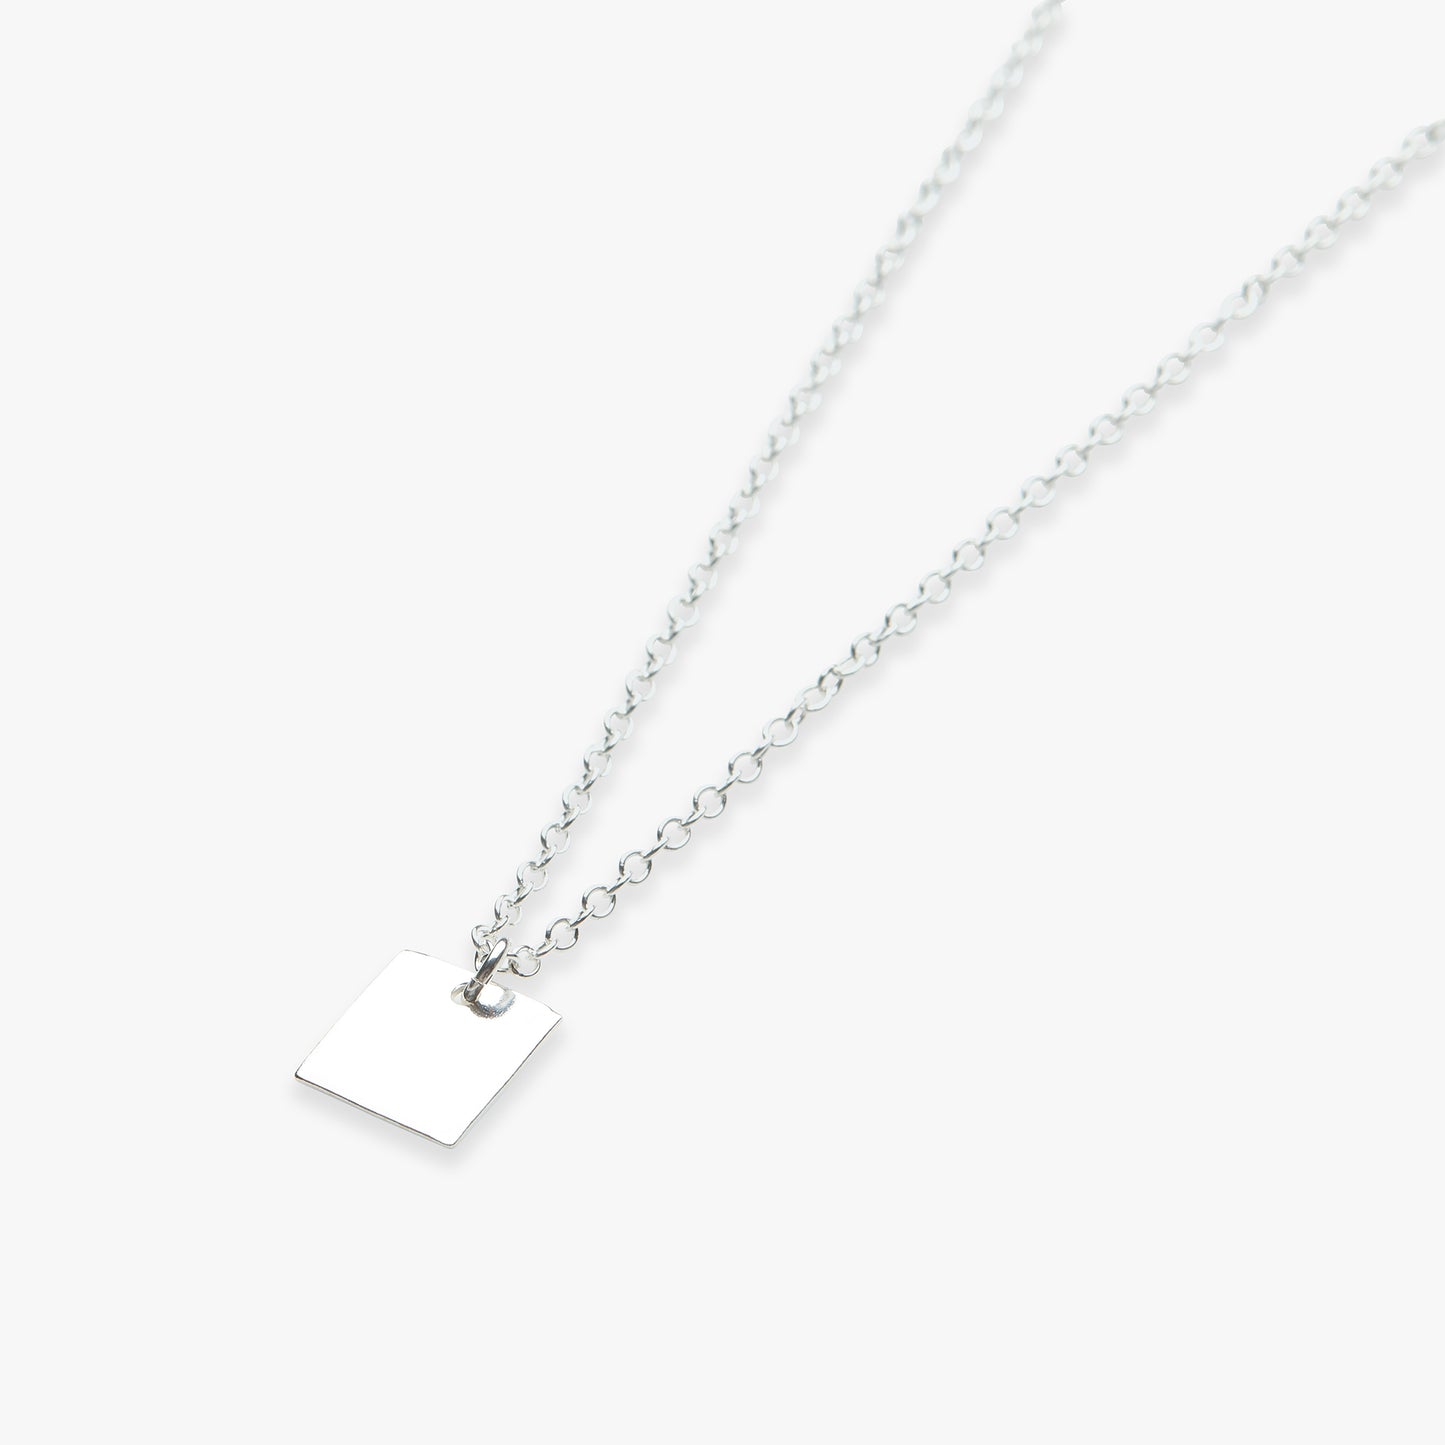 Square pendant necklace silver